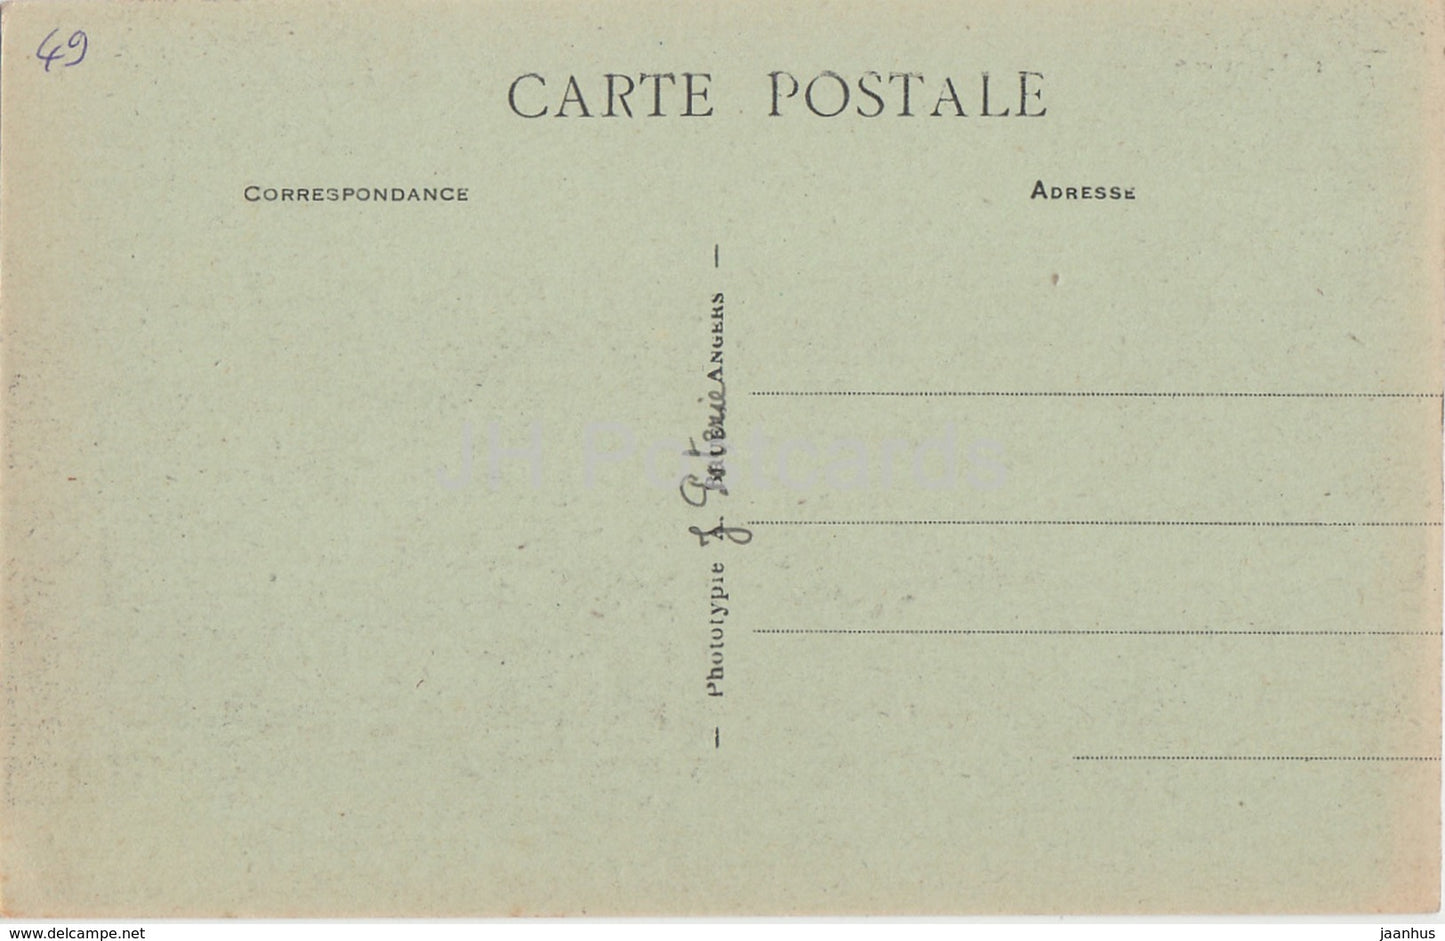 Environs de Champigne - Chateau de Launay a Sceaux - castle - 3 - old postcard - France - unused